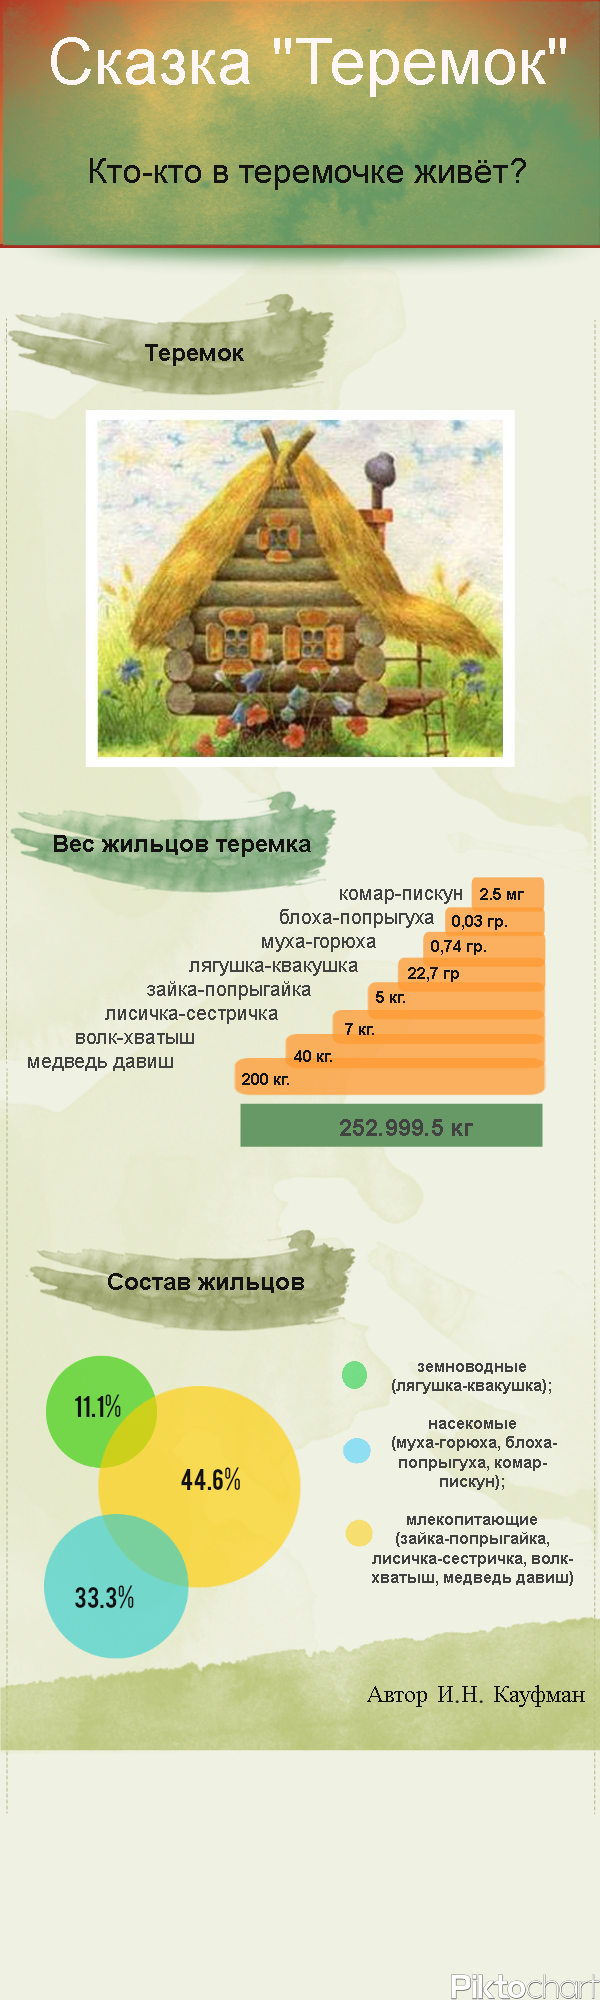 Инфографика "Сказка теремок" в Piktochart